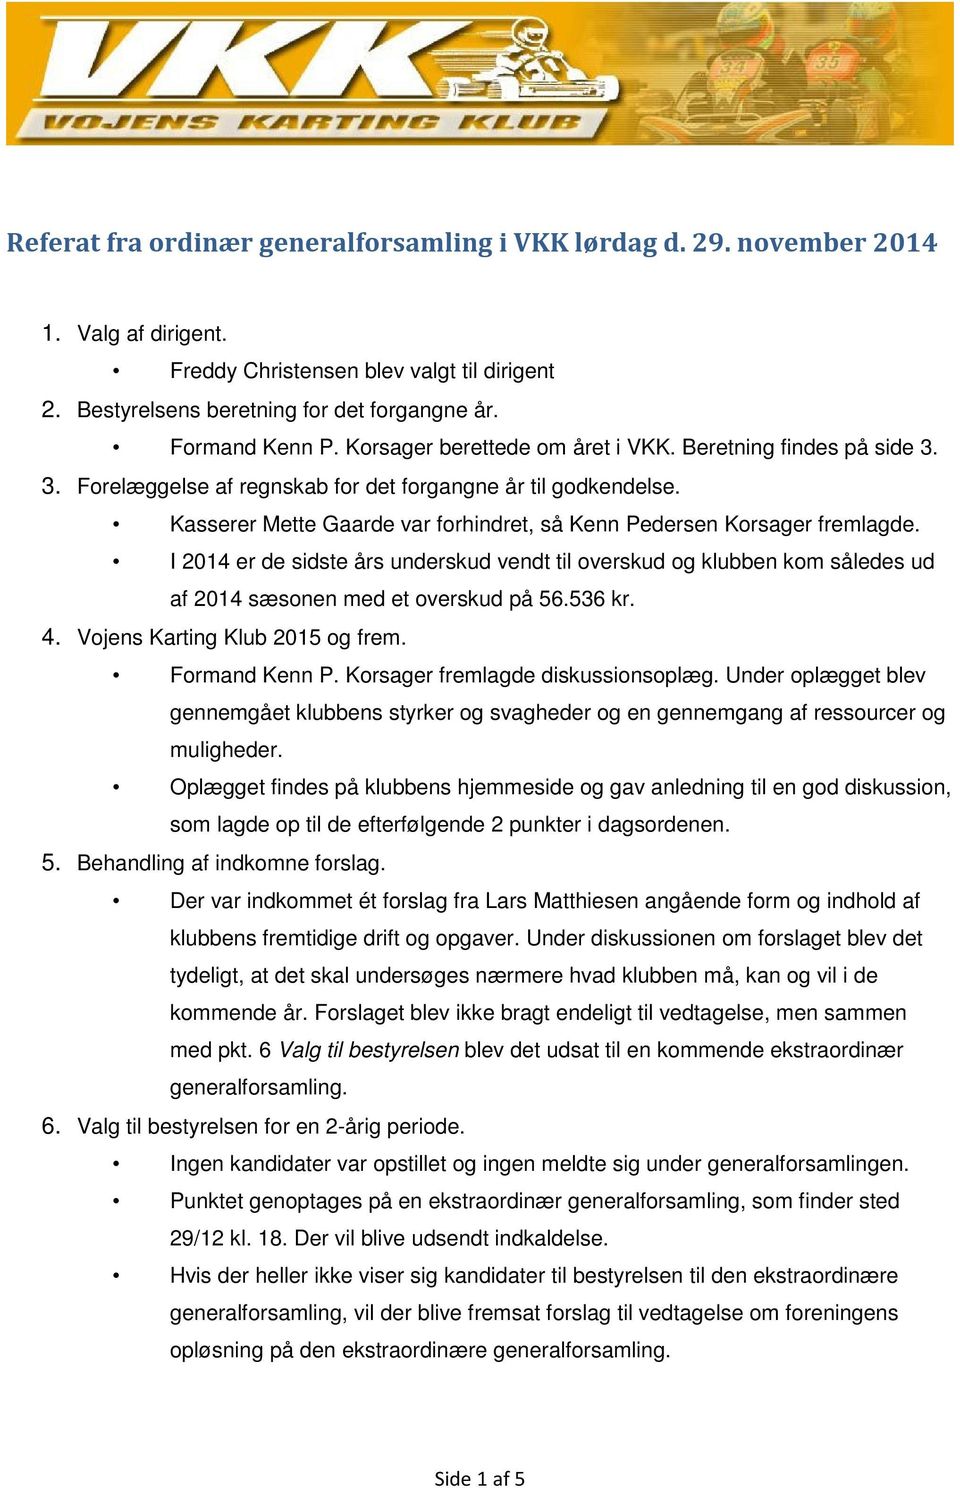 Kasserer Mette Gaarde var forhindret, så Kenn Pedersen Korsager fremlagde. I 2014 er de sidste års underskud vendt til overskud og klubben kom således ud af 2014 sæsonen med et overskud på 56.536 kr.